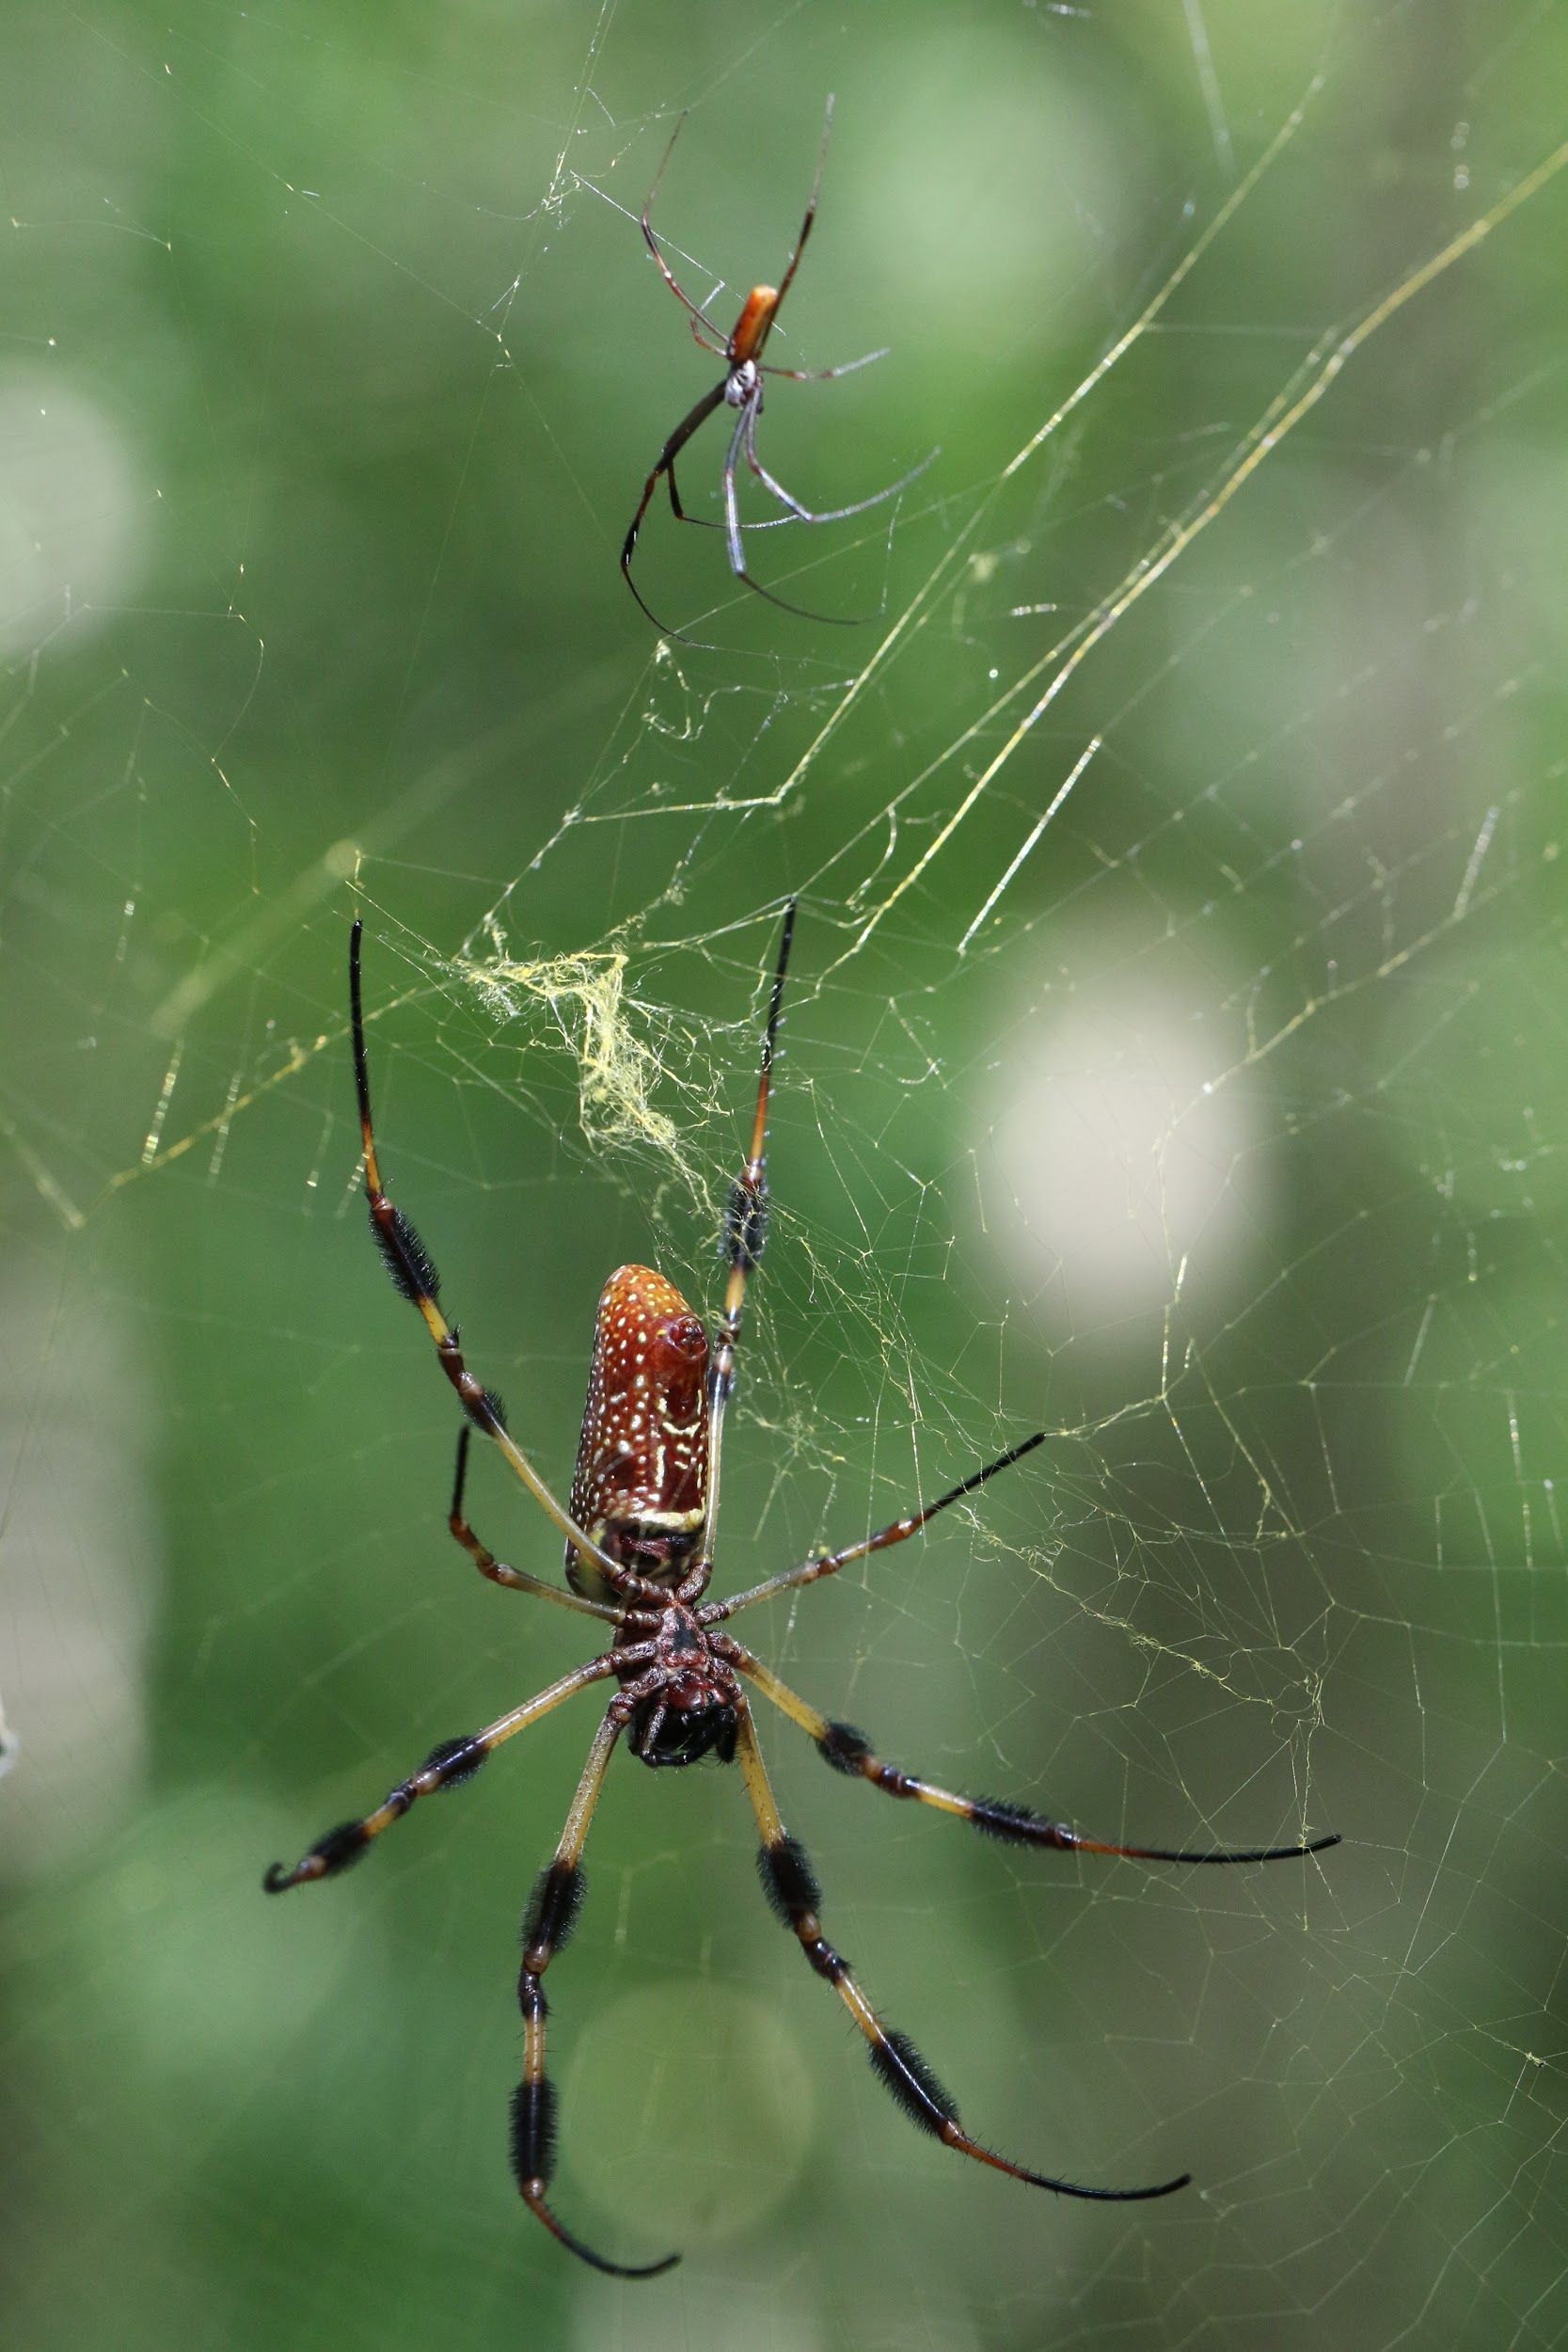 Spider Webs: Behavior, Function, and Evolution, Eberhard